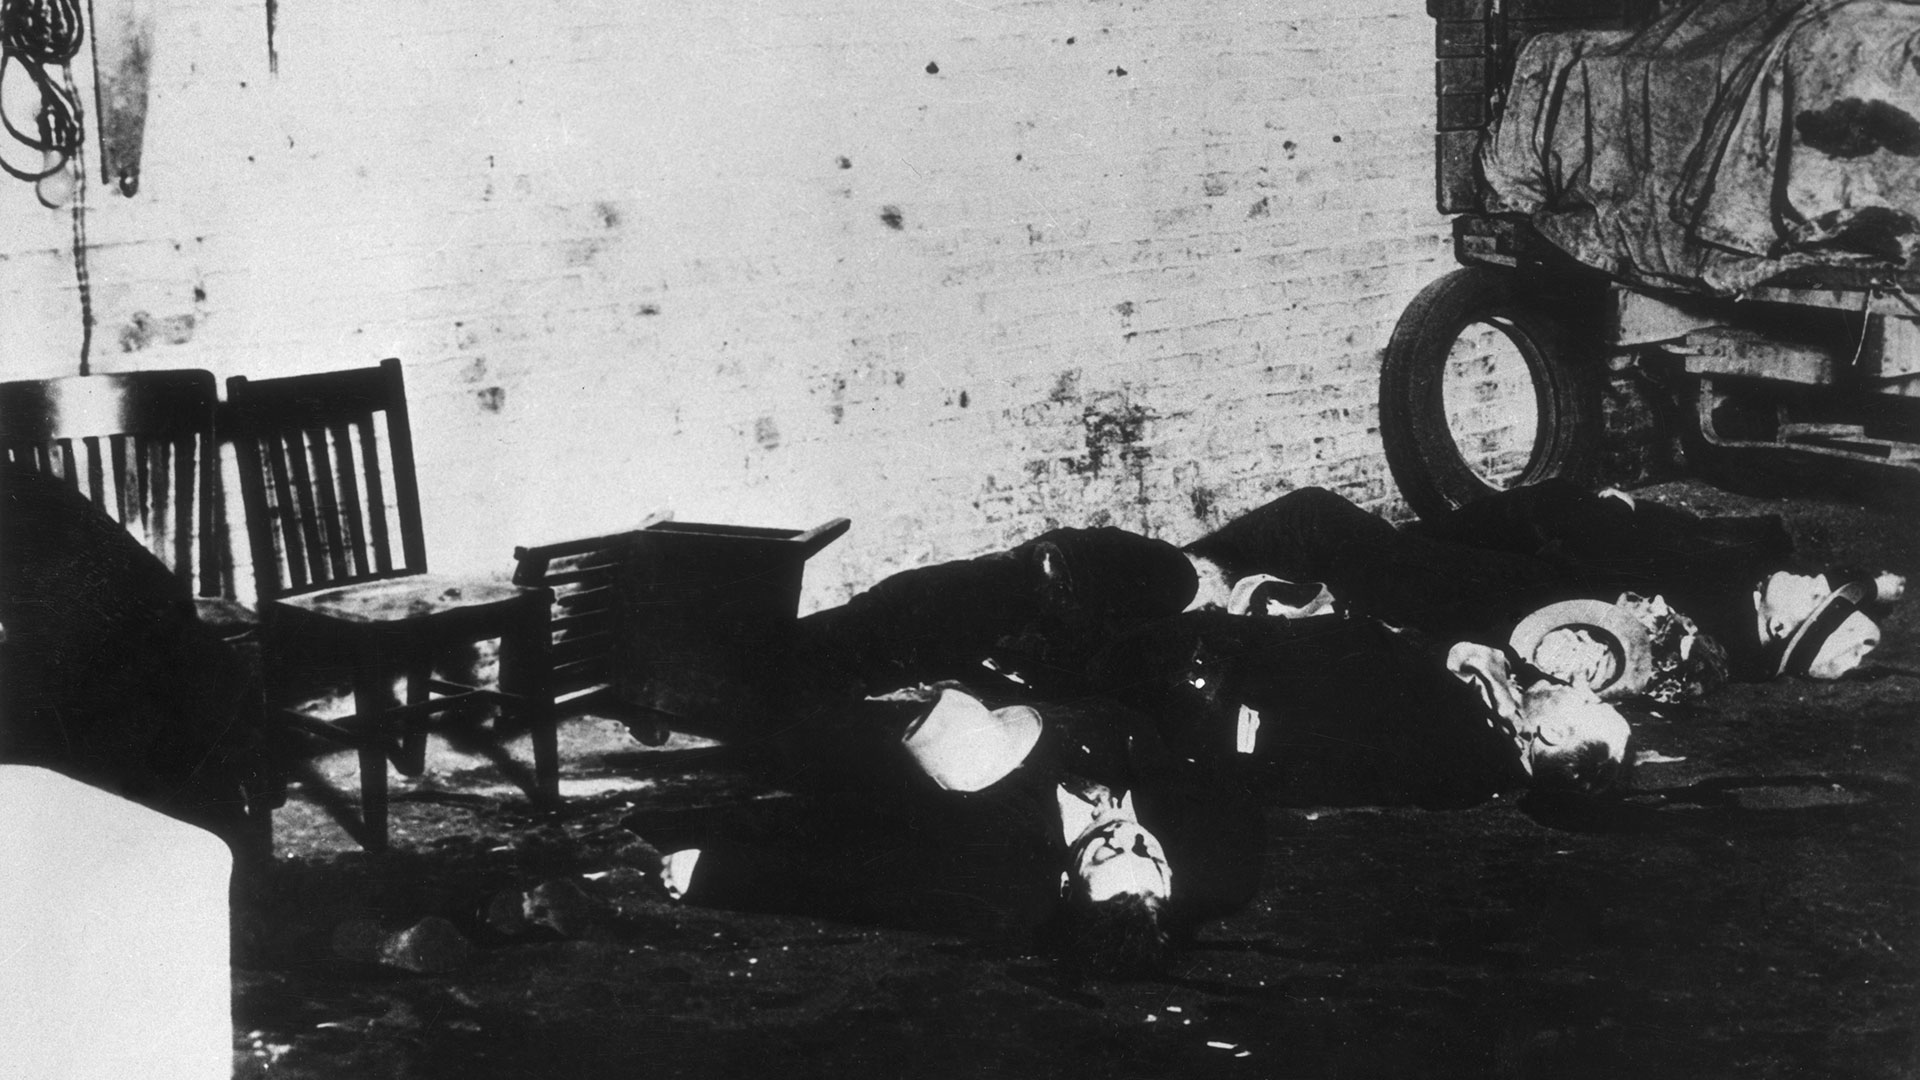 El 14 de febrero de 1929 los gángsters de Al Capone perpetraron "La masacre de San Valentín" (Photo by American Stock/Getty Images)